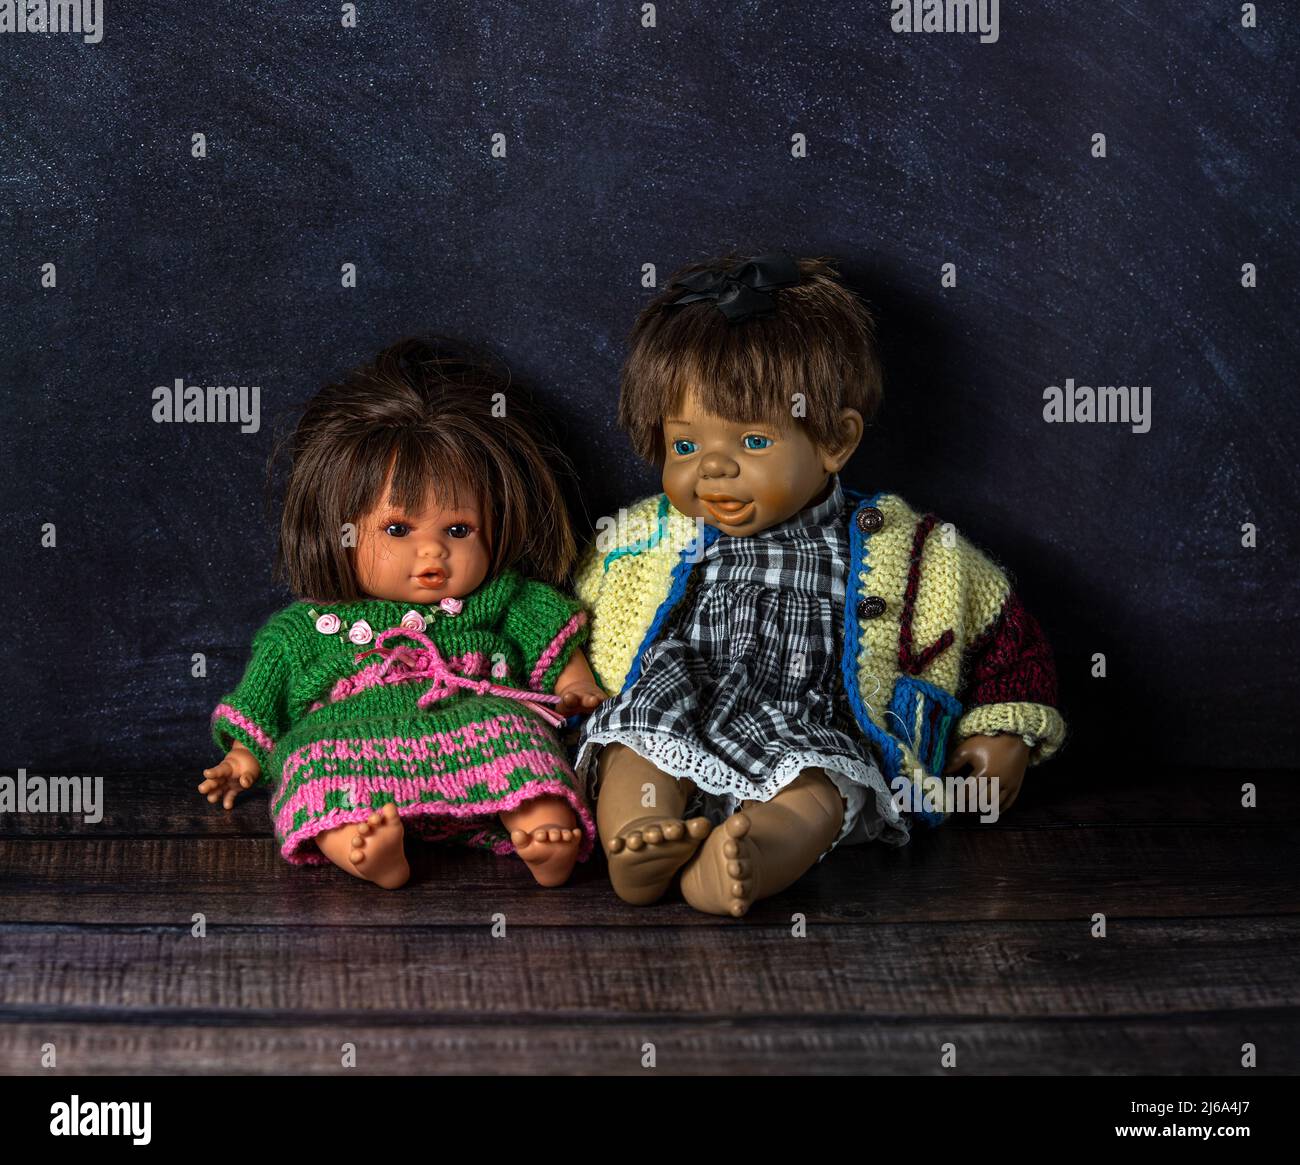 Incroyable réaliste deux poupées vintage: Avec des yeux bleus et bruns.les poupées sont vêtues de robes tricotées colorées. Mise au point sélective. Couple. Banque D'Images